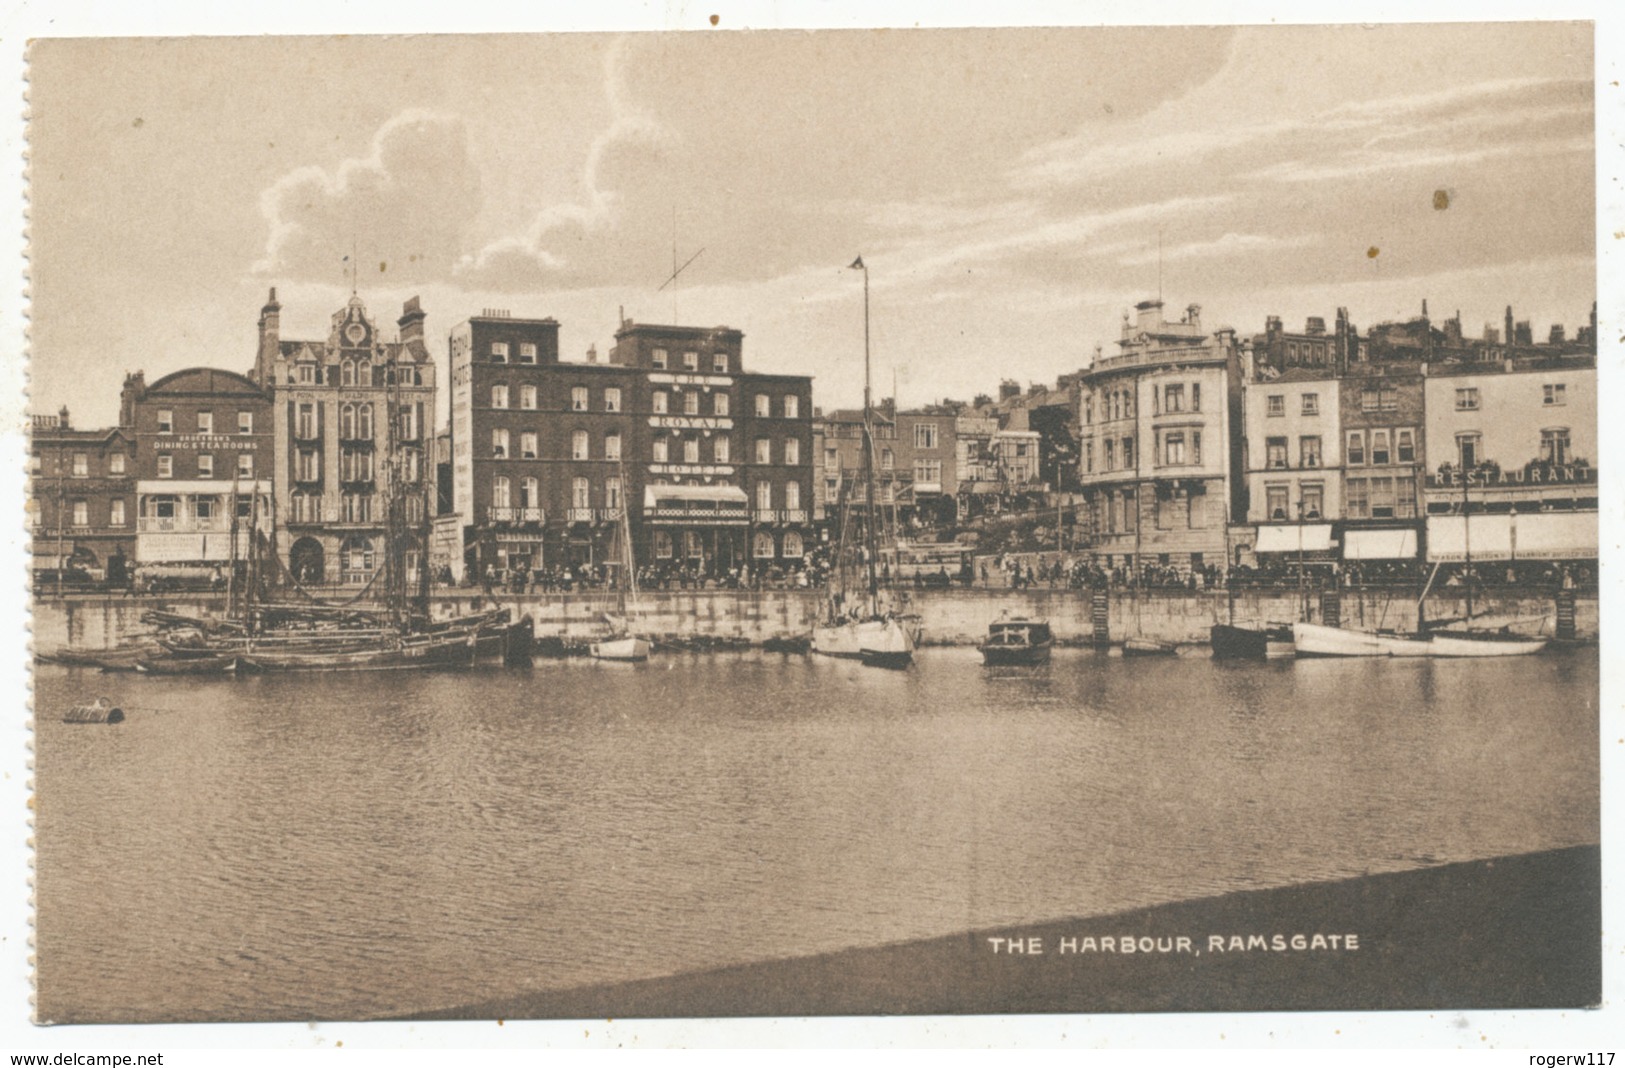 The Harbour, Ramsgate - Ramsgate